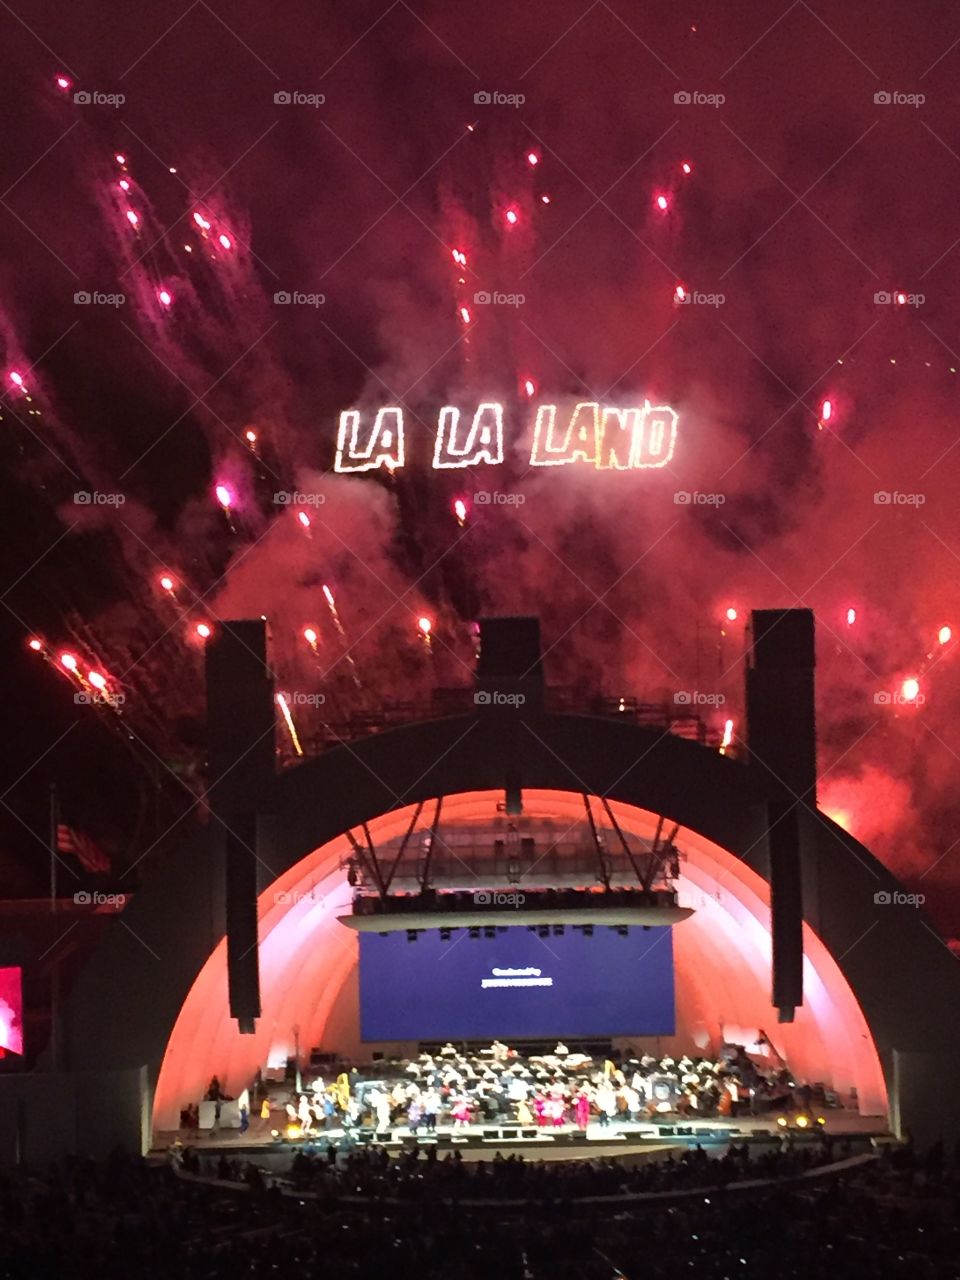 La La Land at the Hollywood Bowl